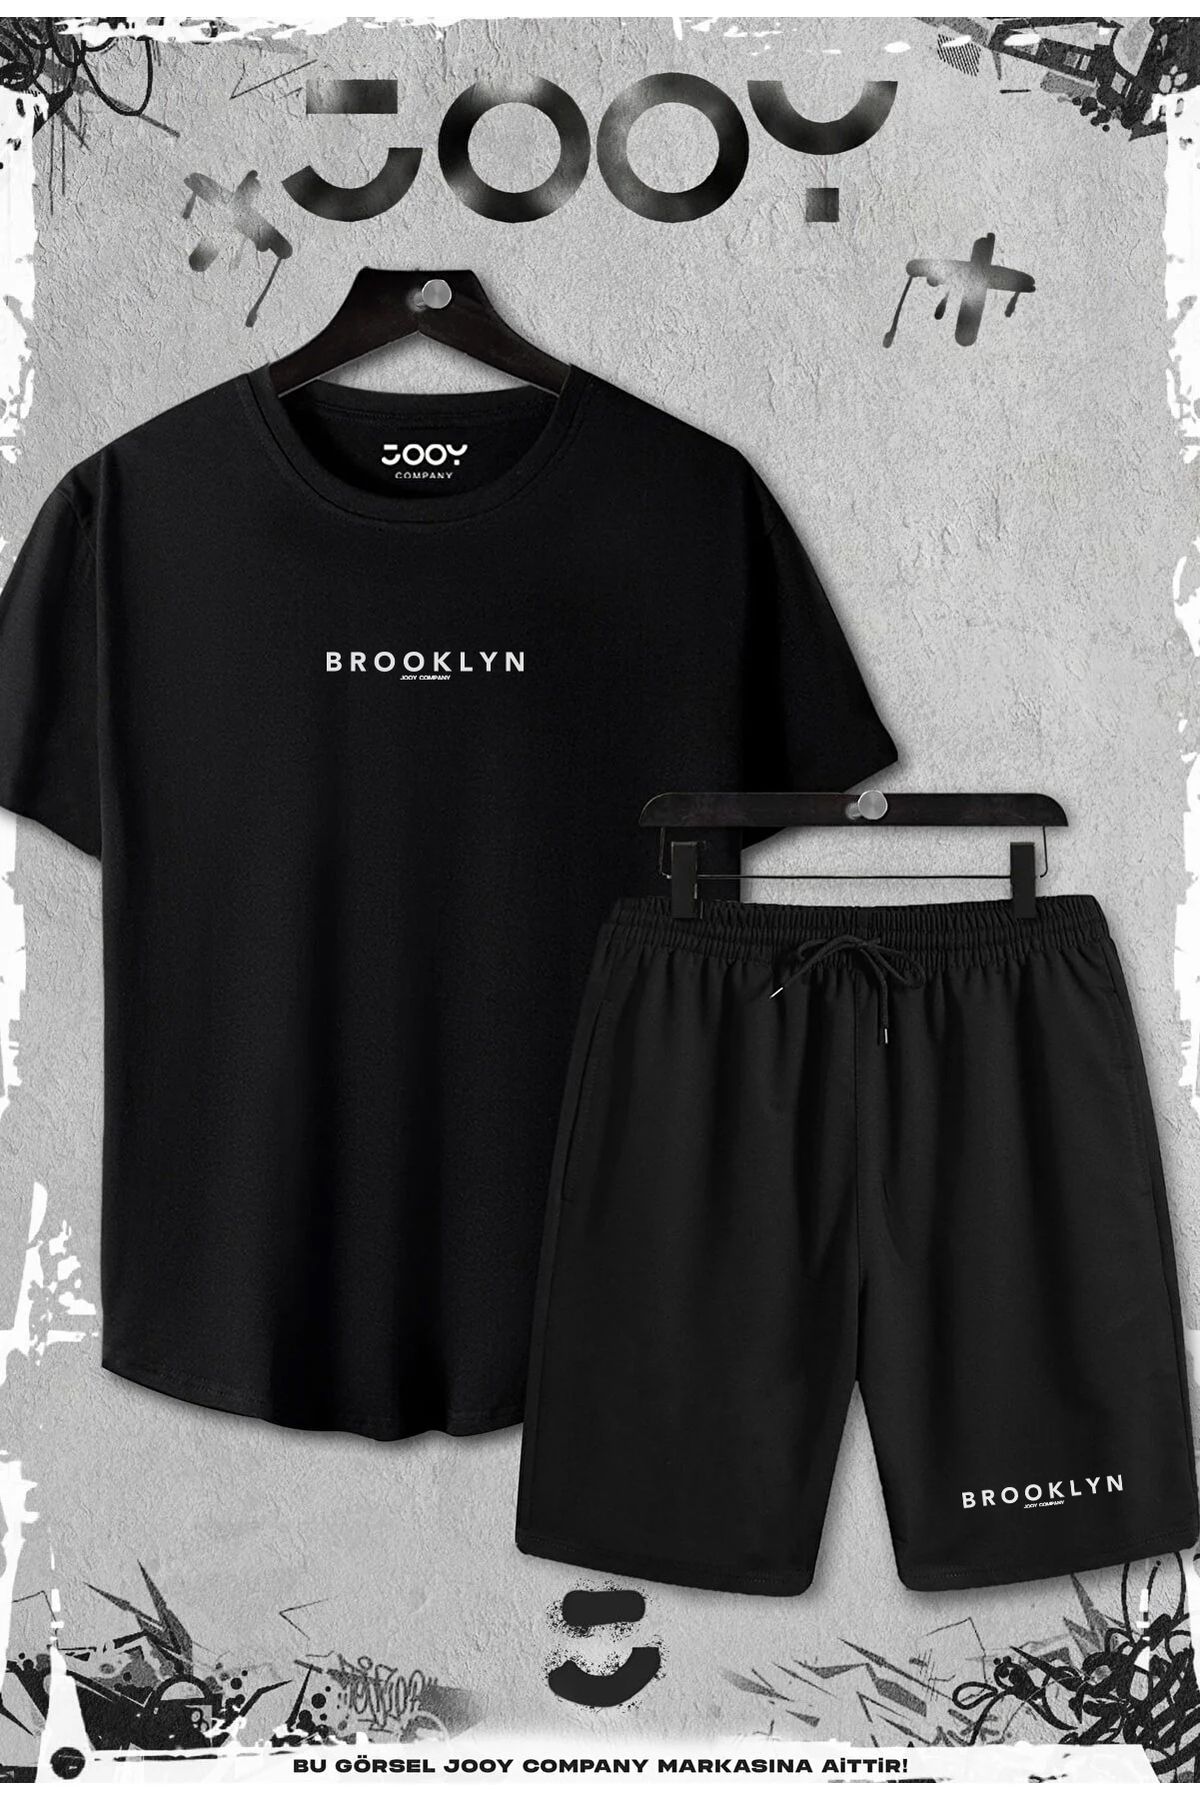 Jooy Company 2'li Brooklyn Baskılı Slim Fit Siyah Tshirt - Siyah Şortlu Takım